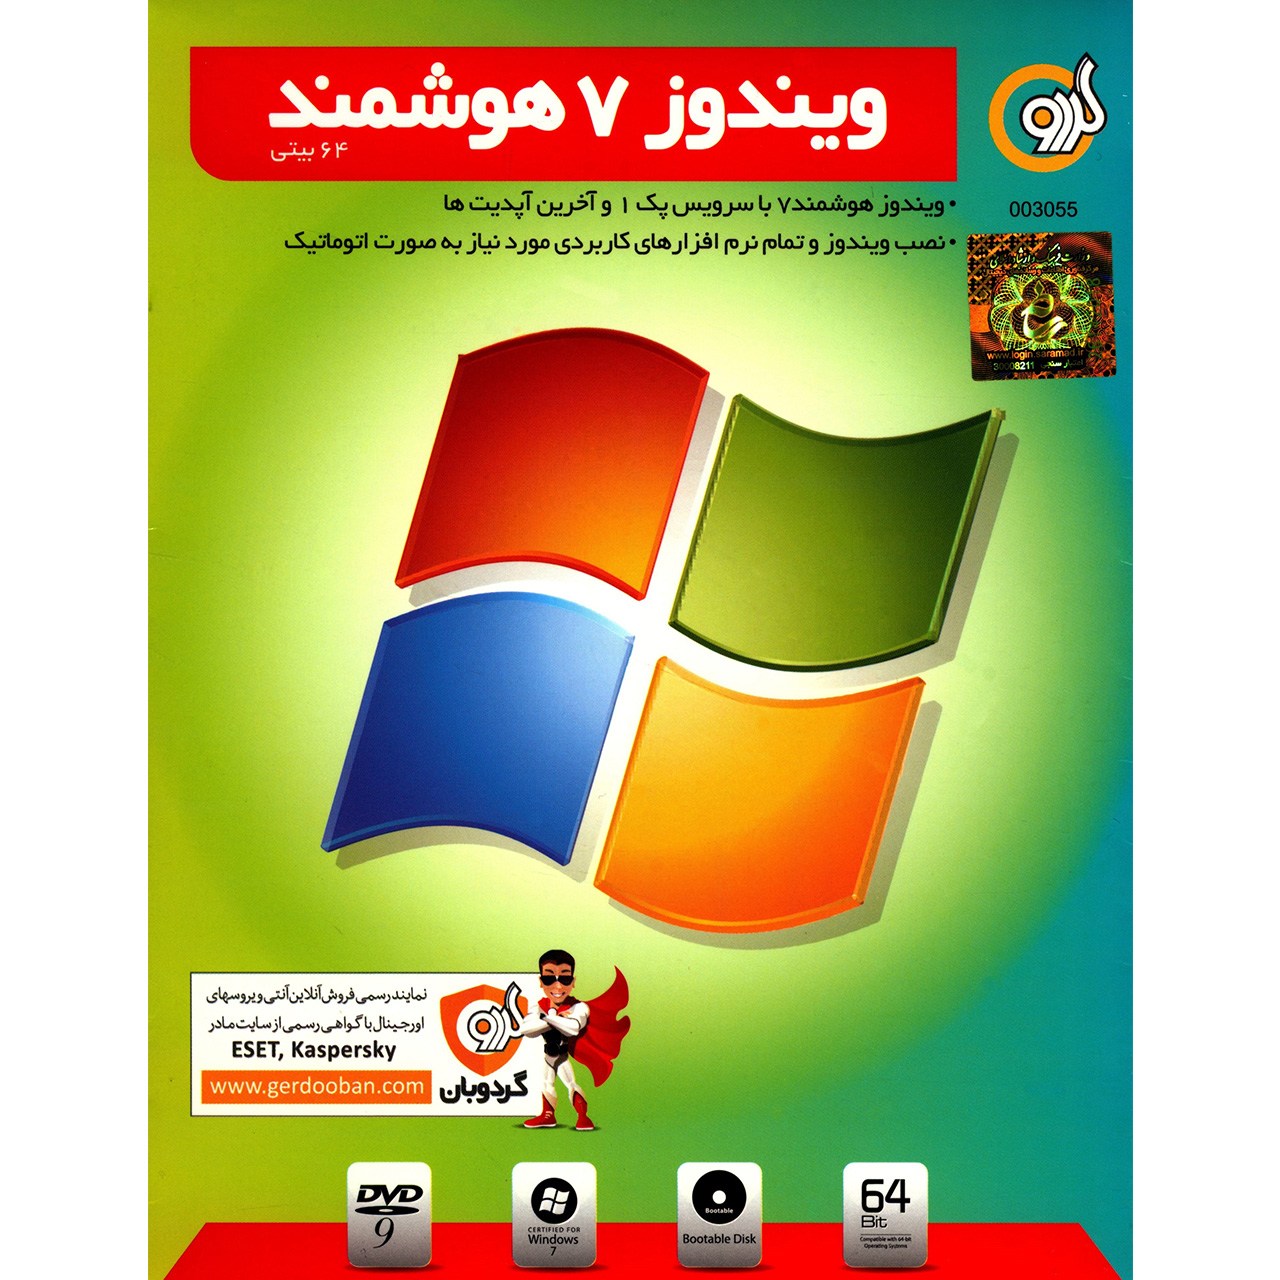 سیستم عامل Windows 7 Smart Edition گردو 64 بیت